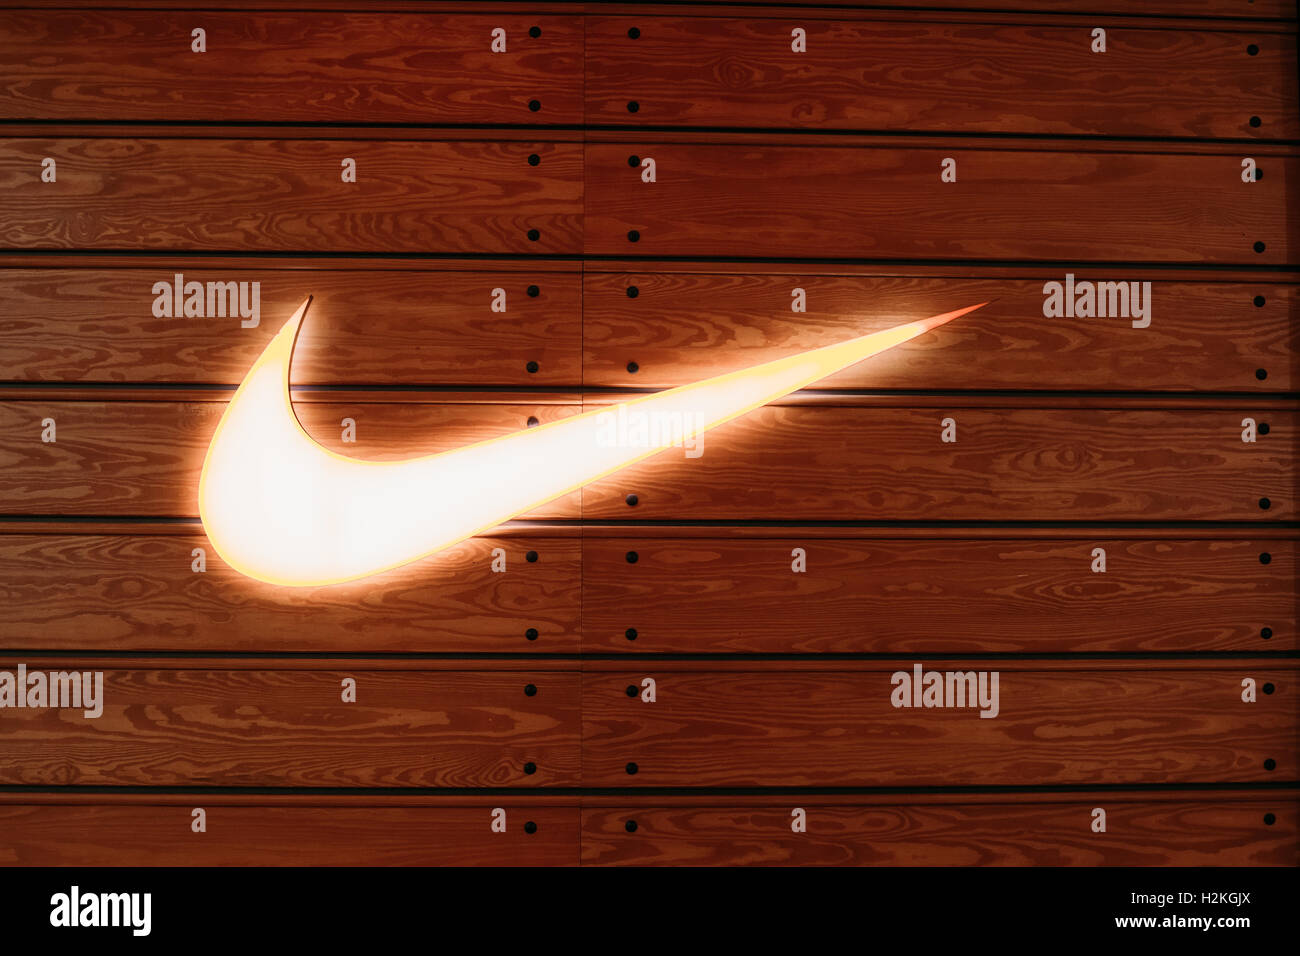 Nike brand Banque de photographies et d'images à haute résolution - Alamy